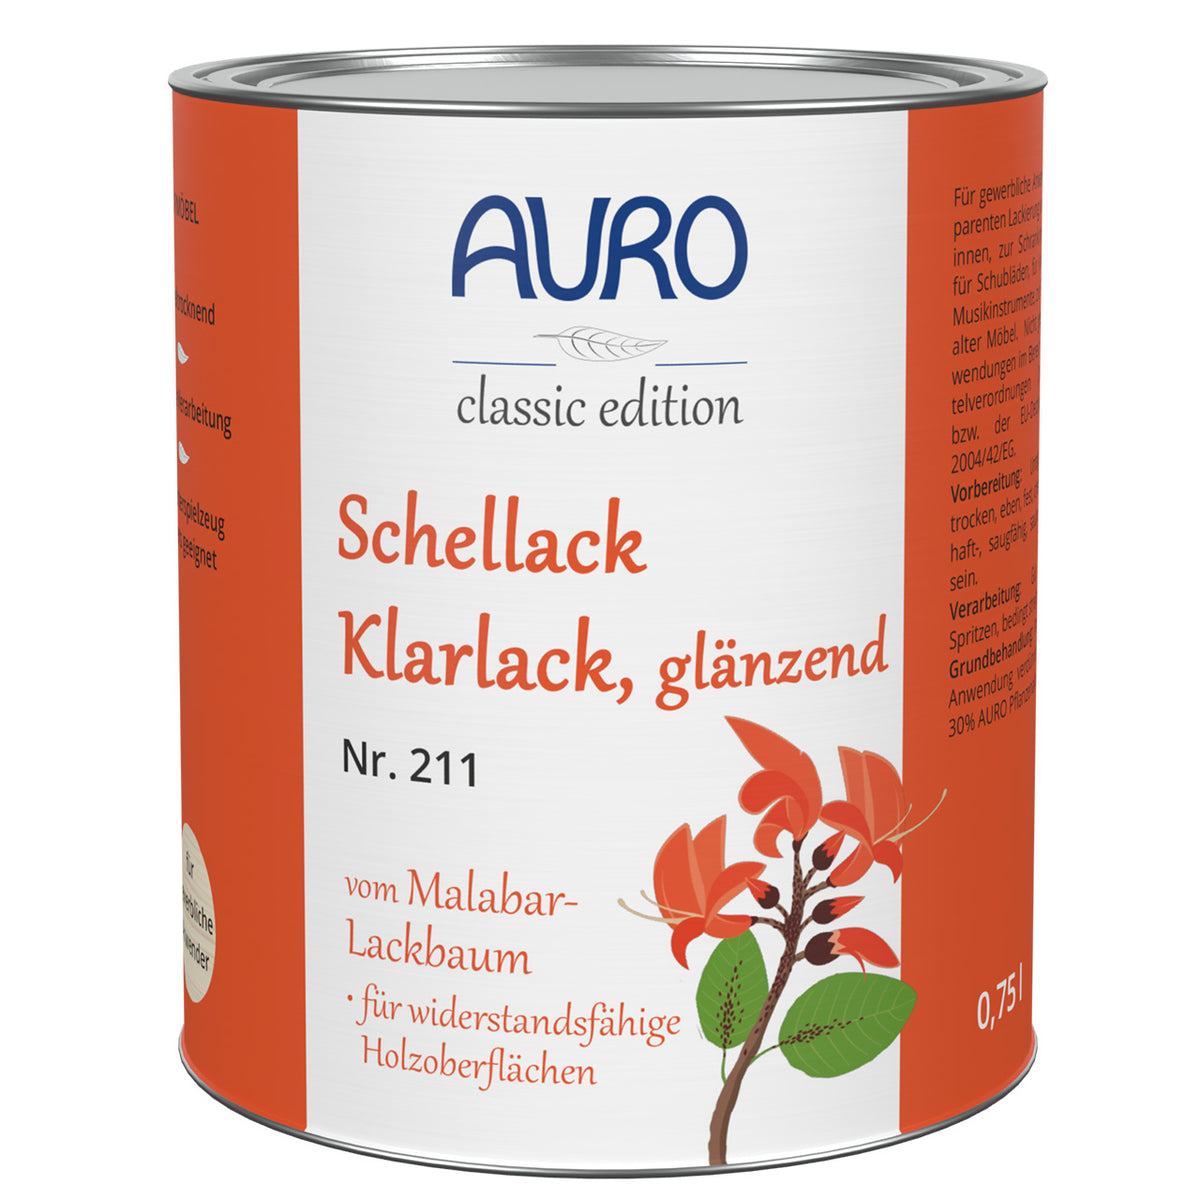 AURO Schellack-Klarlack, glänzend Nr. 211